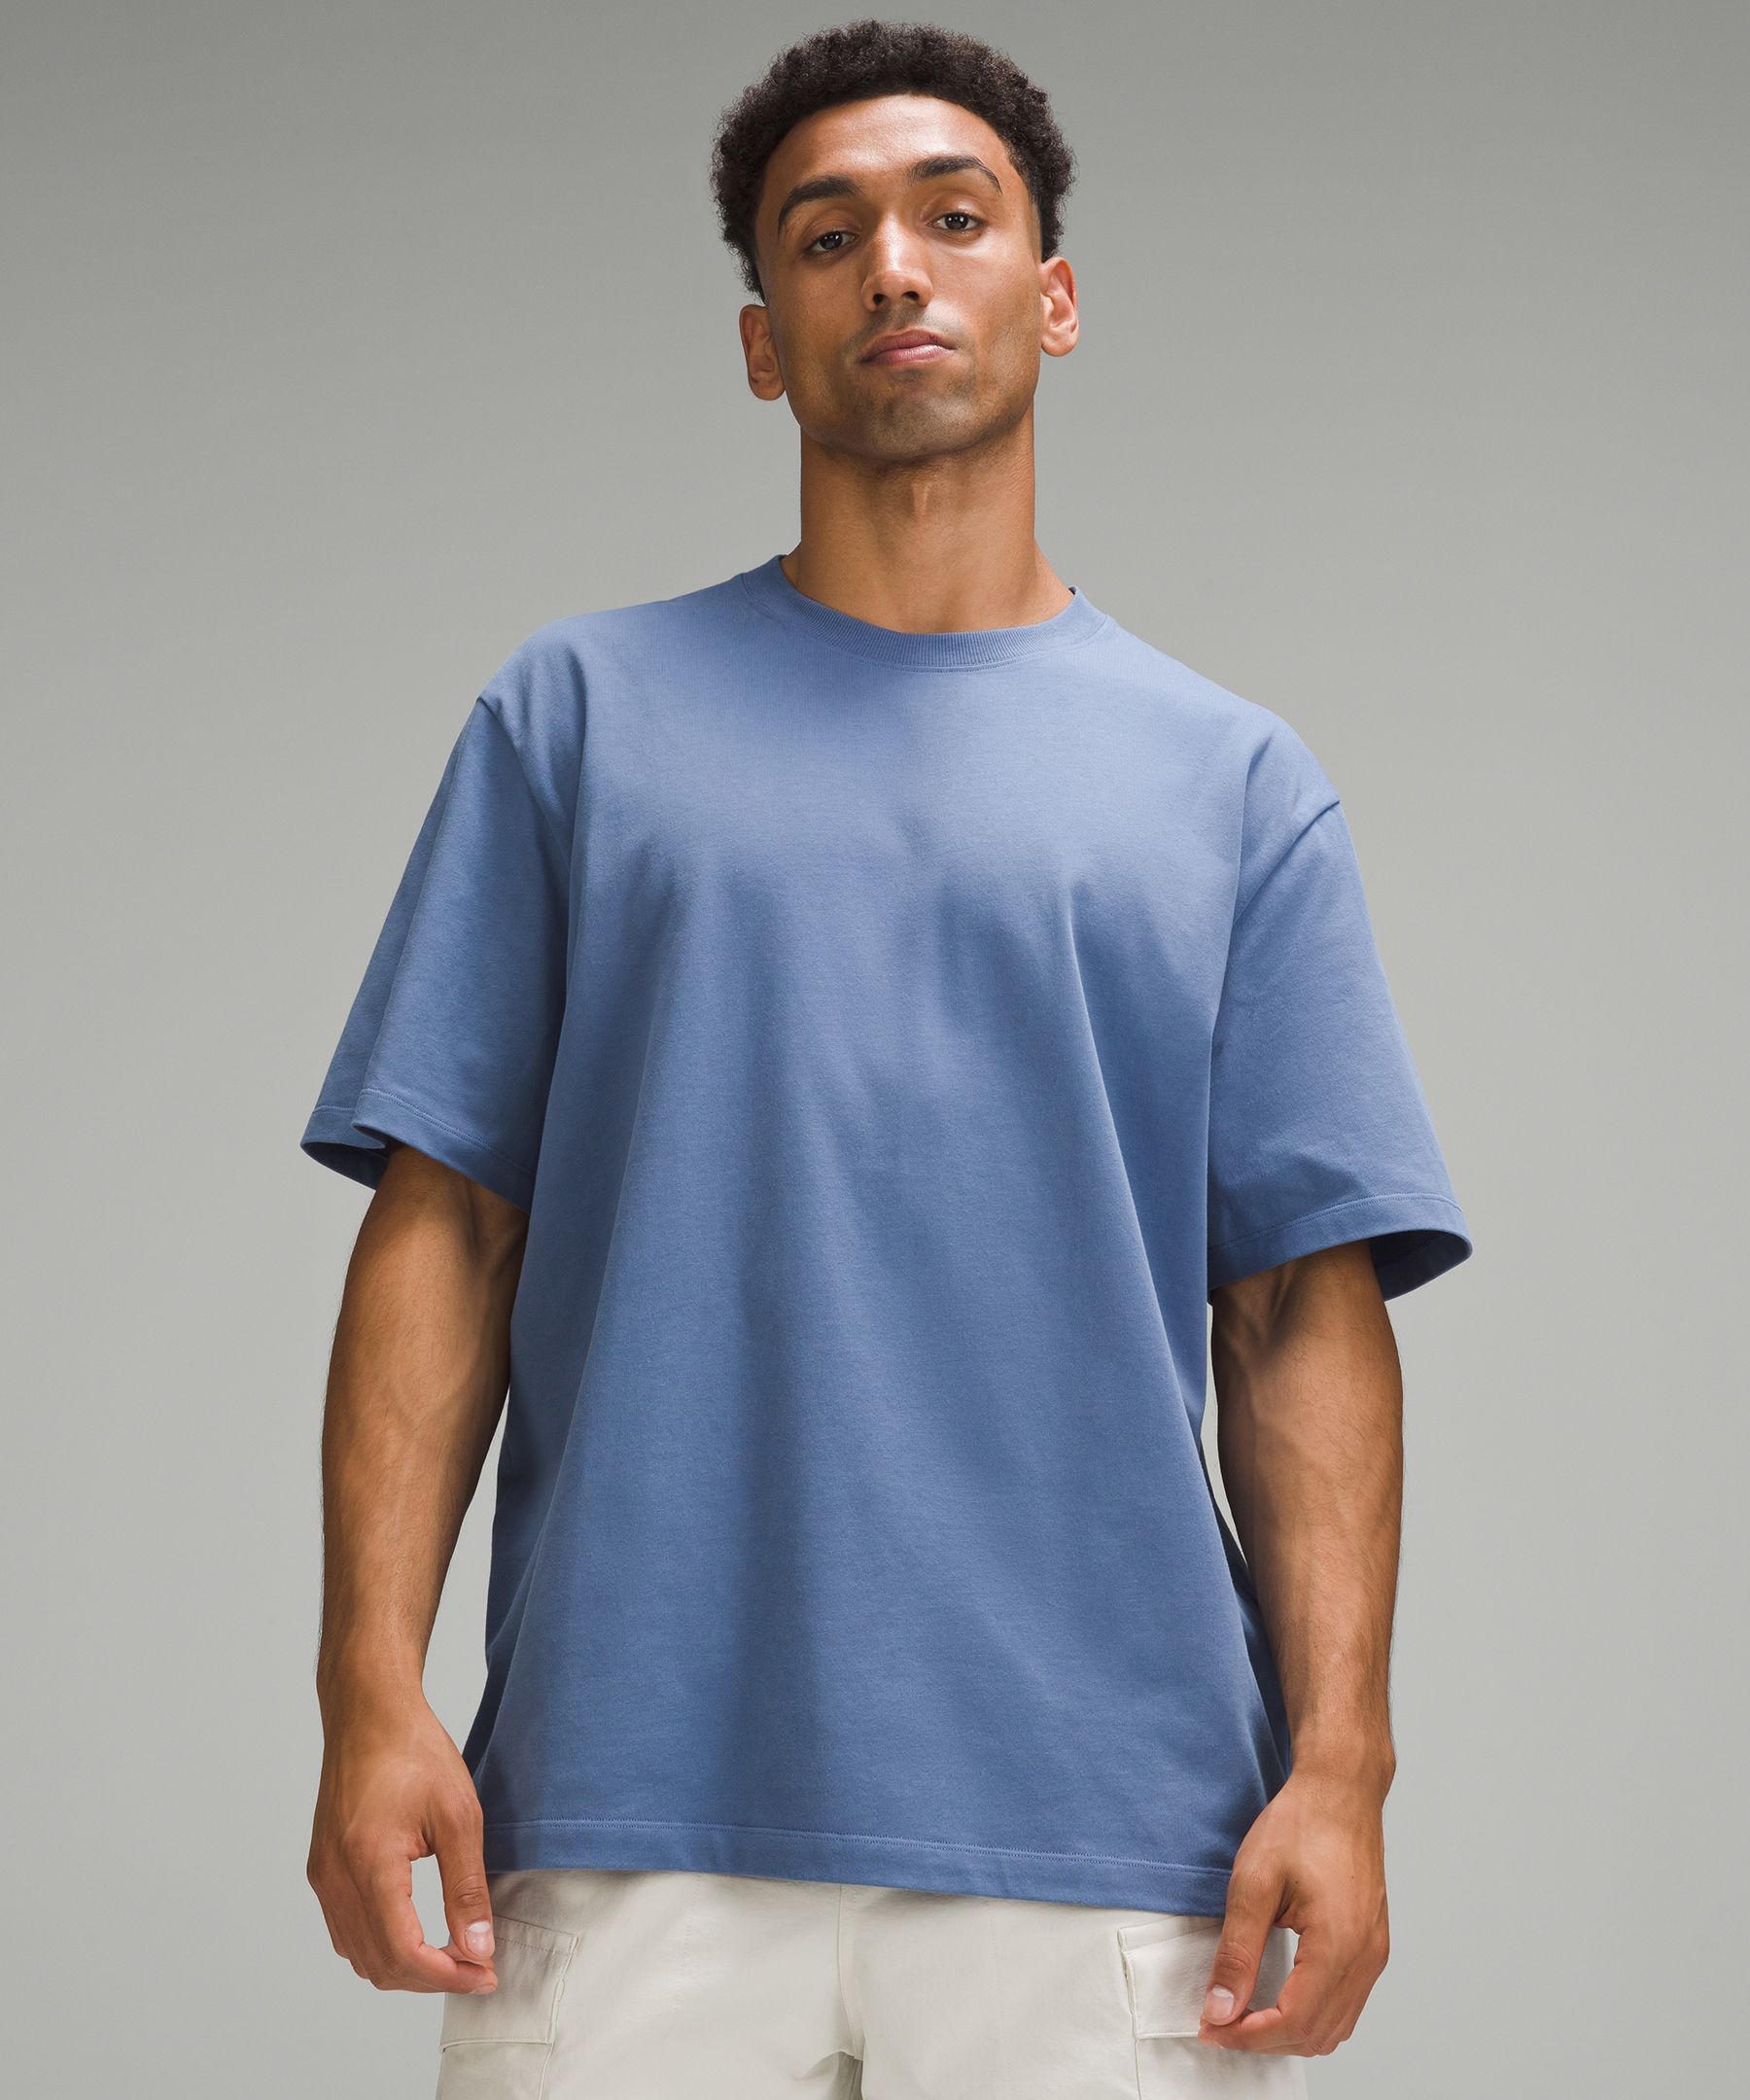 Heavyweight Cotton Jersey T-Shirt | Men's Short Sleeve Shirts & Tee's